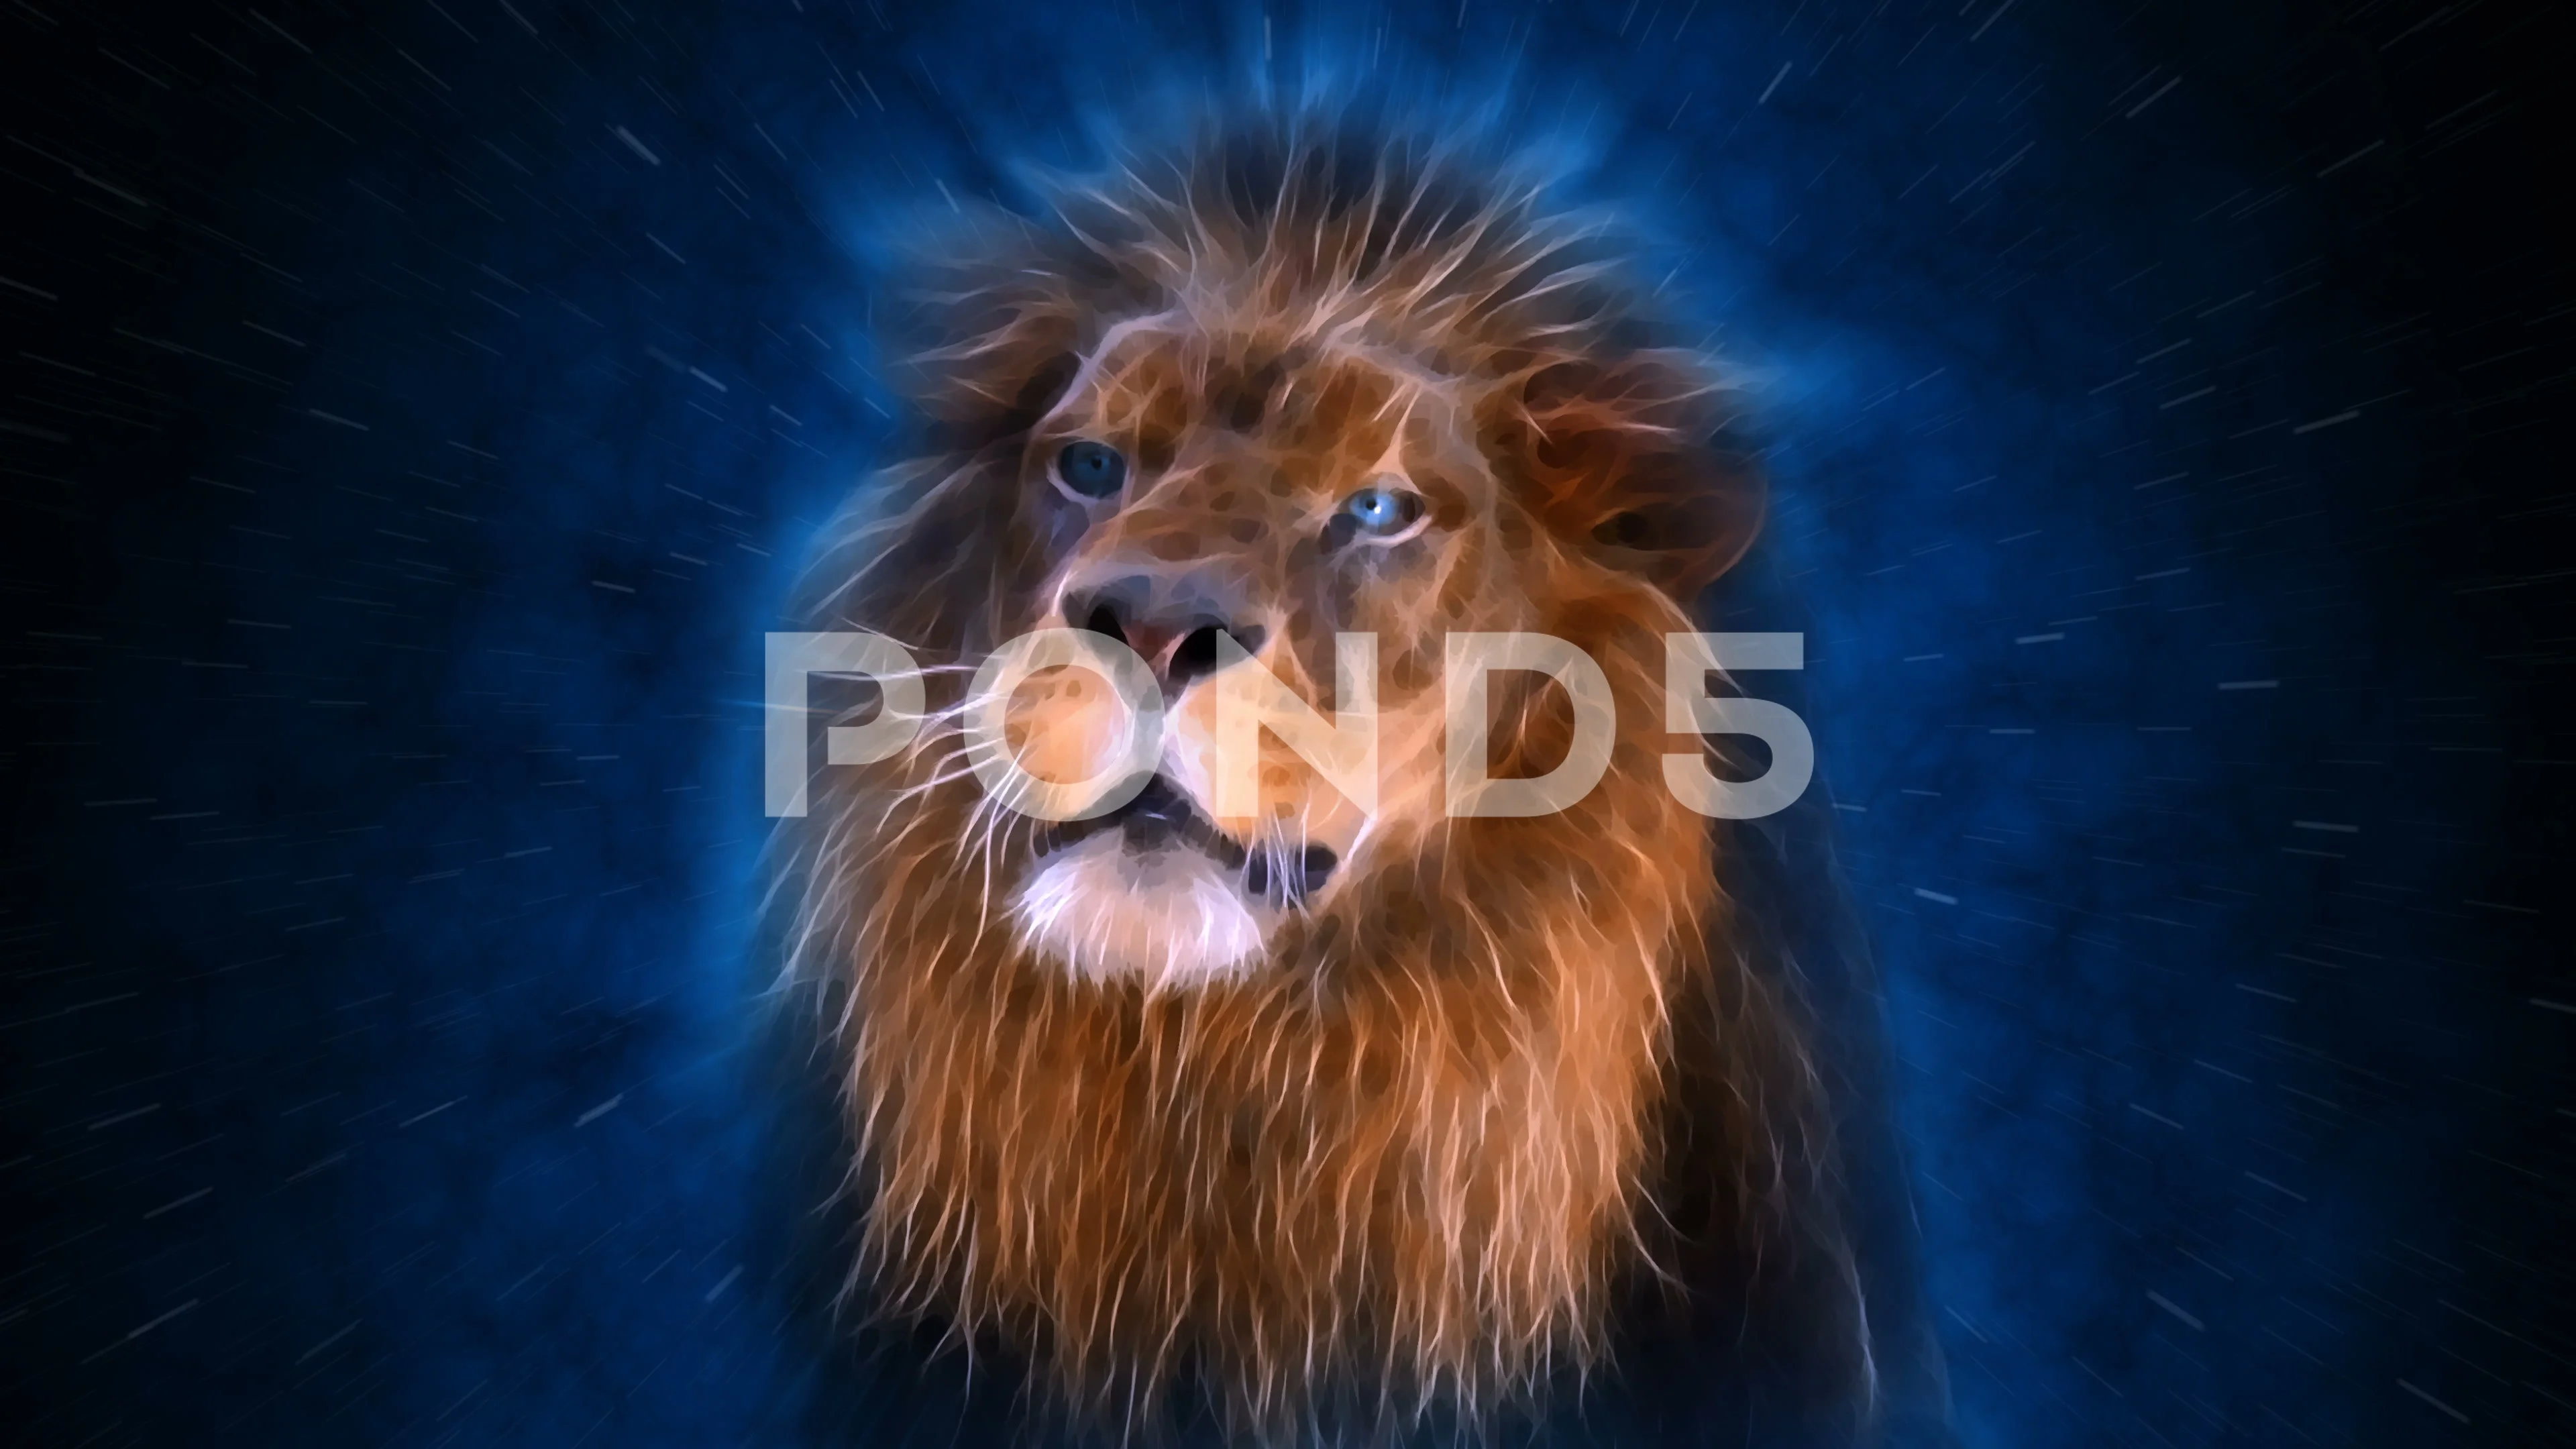 Lion Roar Sound Effect, Lion, Lion Roar